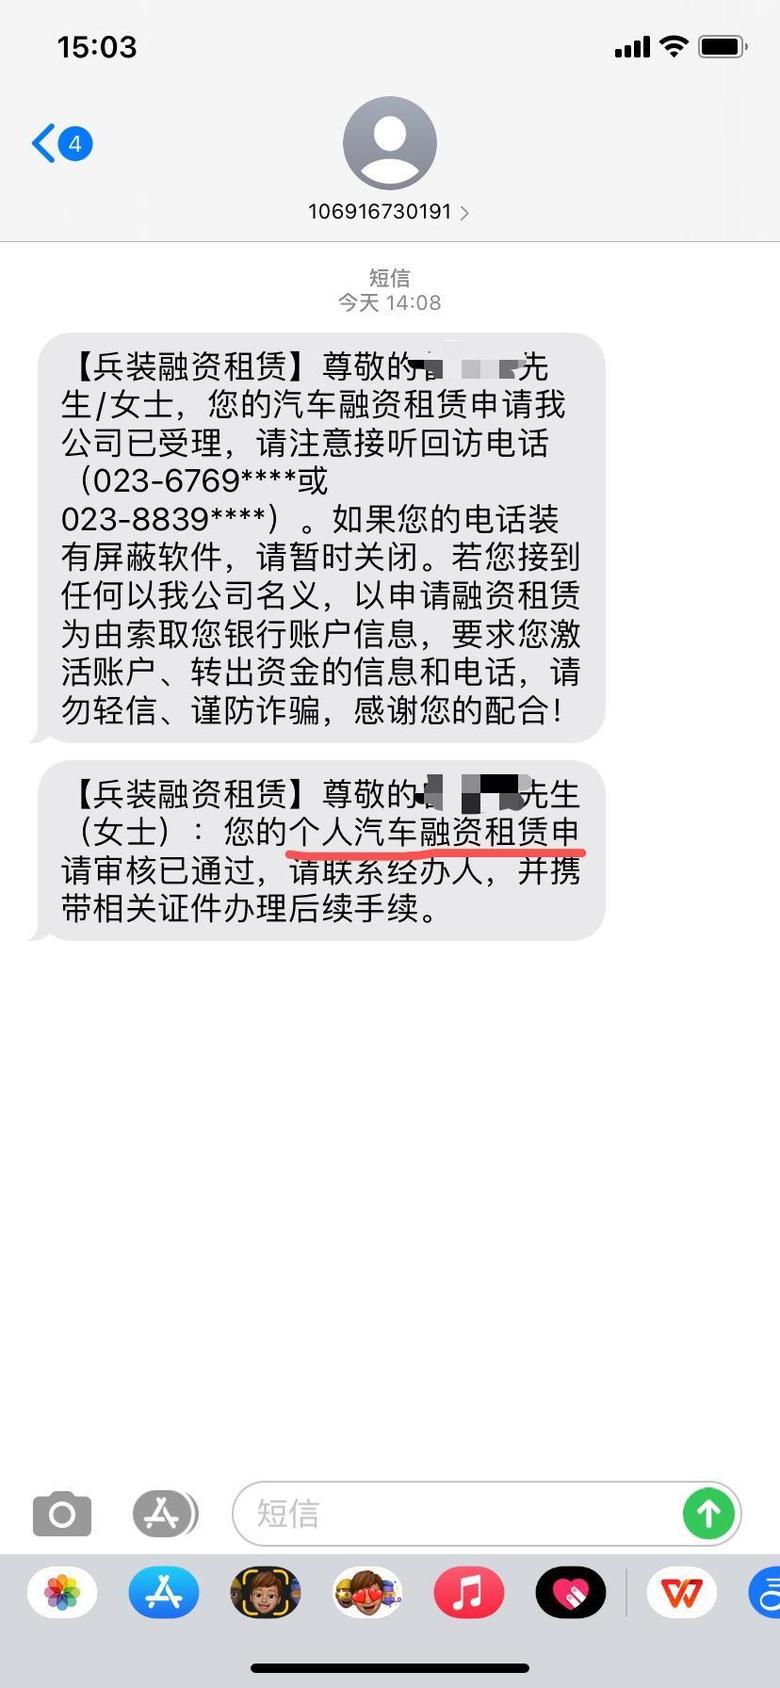 长安欧尚x5 老铁们，车贷办的长安金融5万免息的，为什么短信上说汽车融资租赁？不会是以租代购吧？